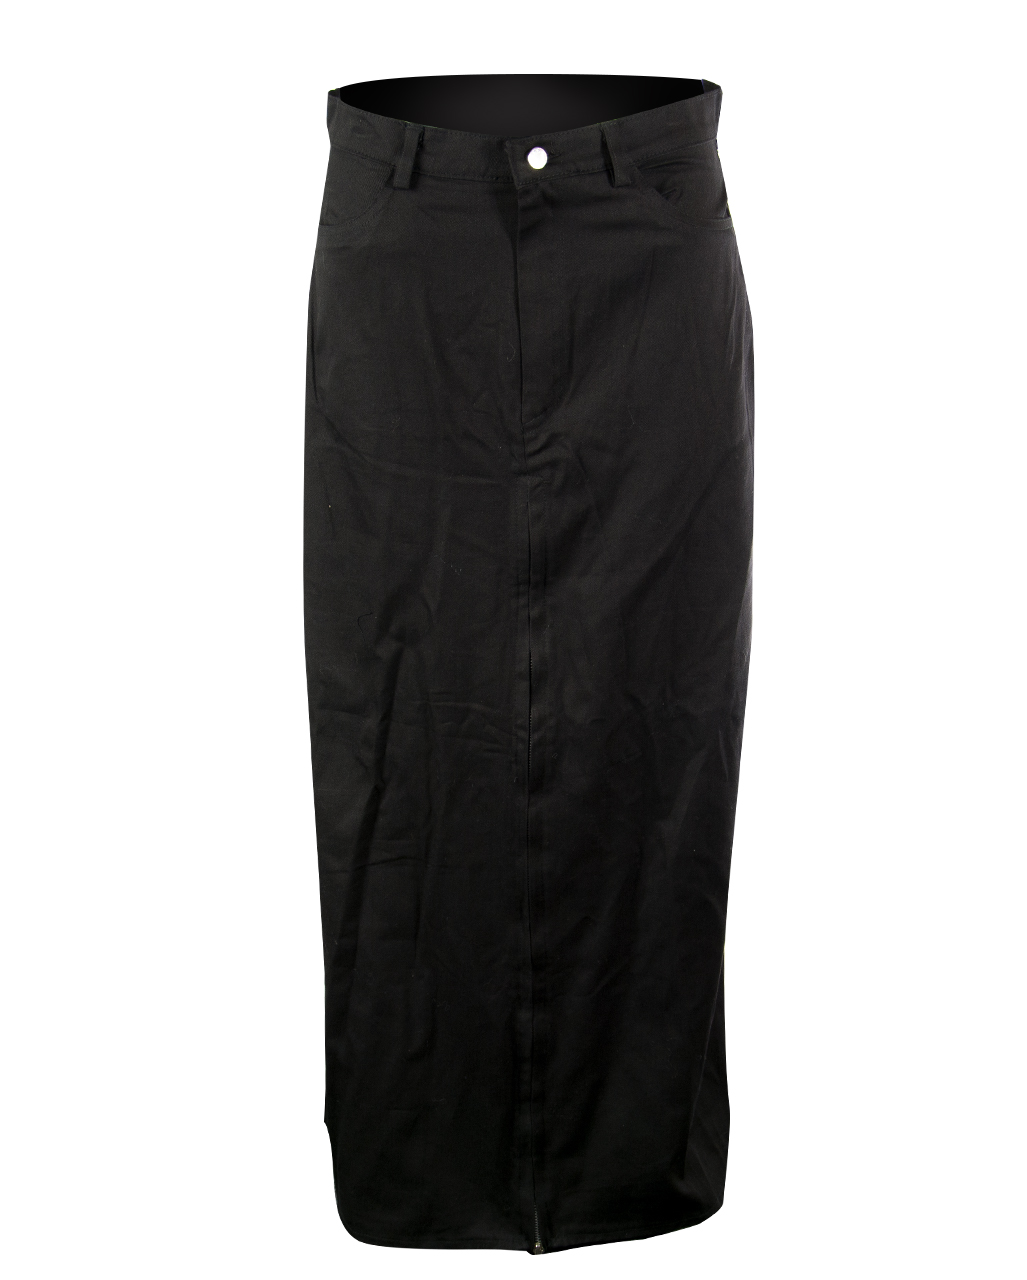 Long Men's Skirt Black for gothics | horror-shop.com